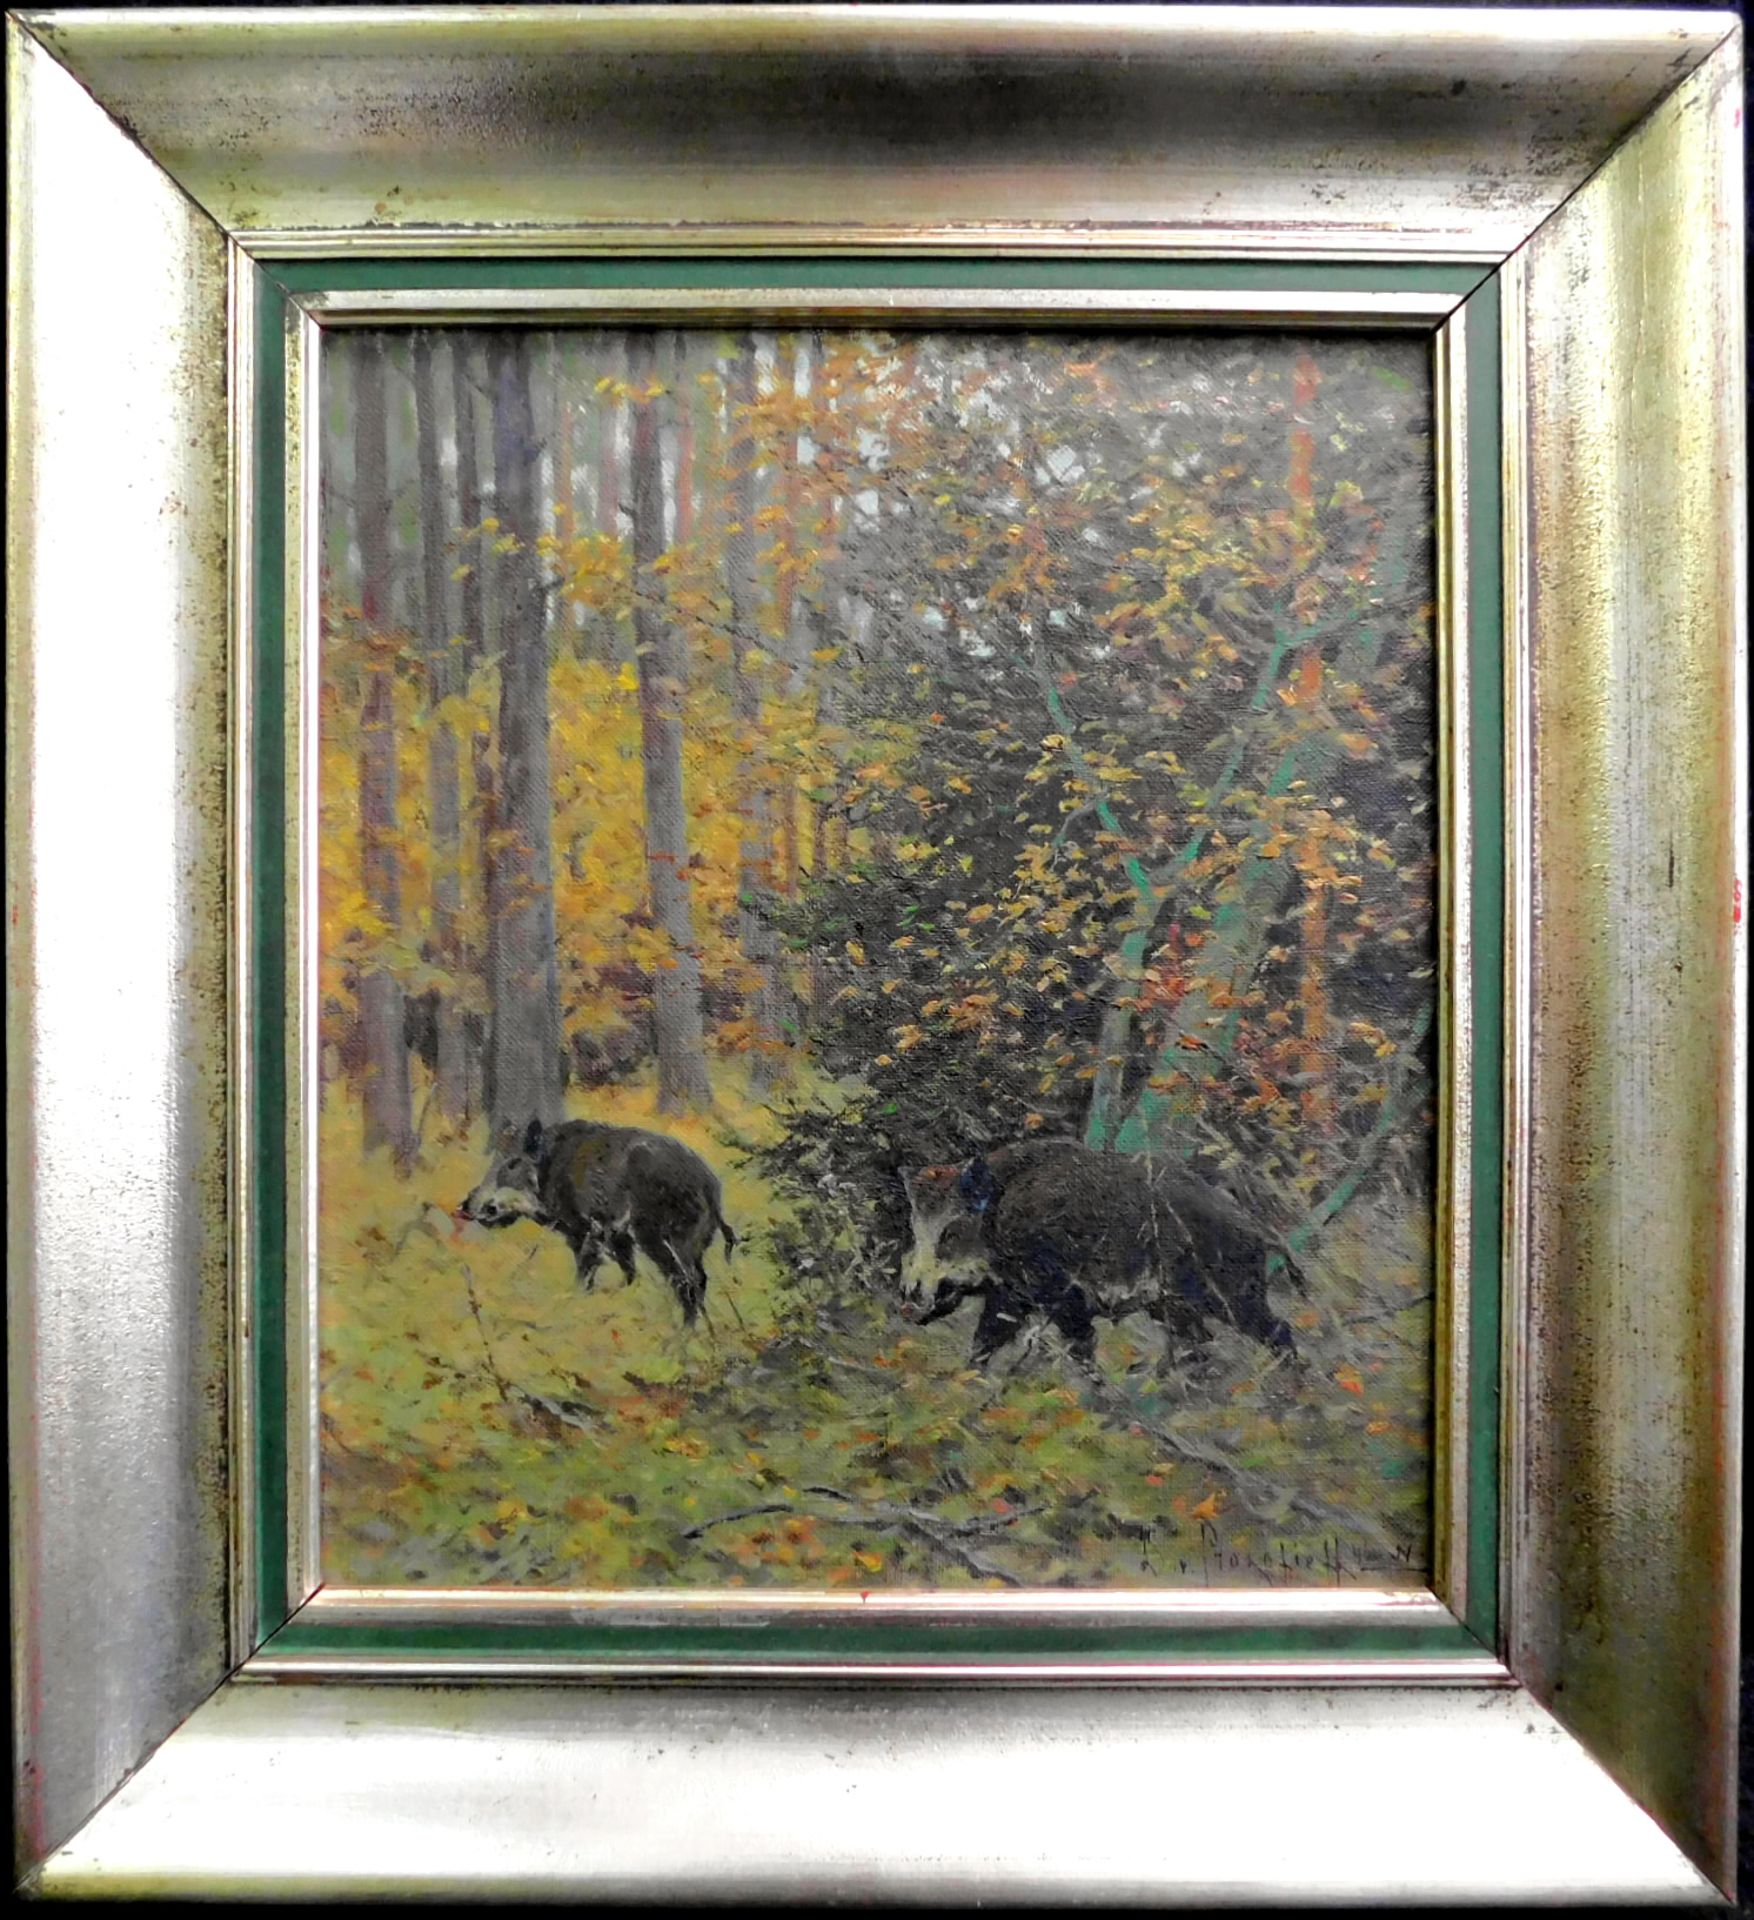 Dimitri von Prokofieff *1870 Nikolajew-1950 Kevelaer, "Wildschweine" Öl/Leinwand, sig. u.dat. (19)46